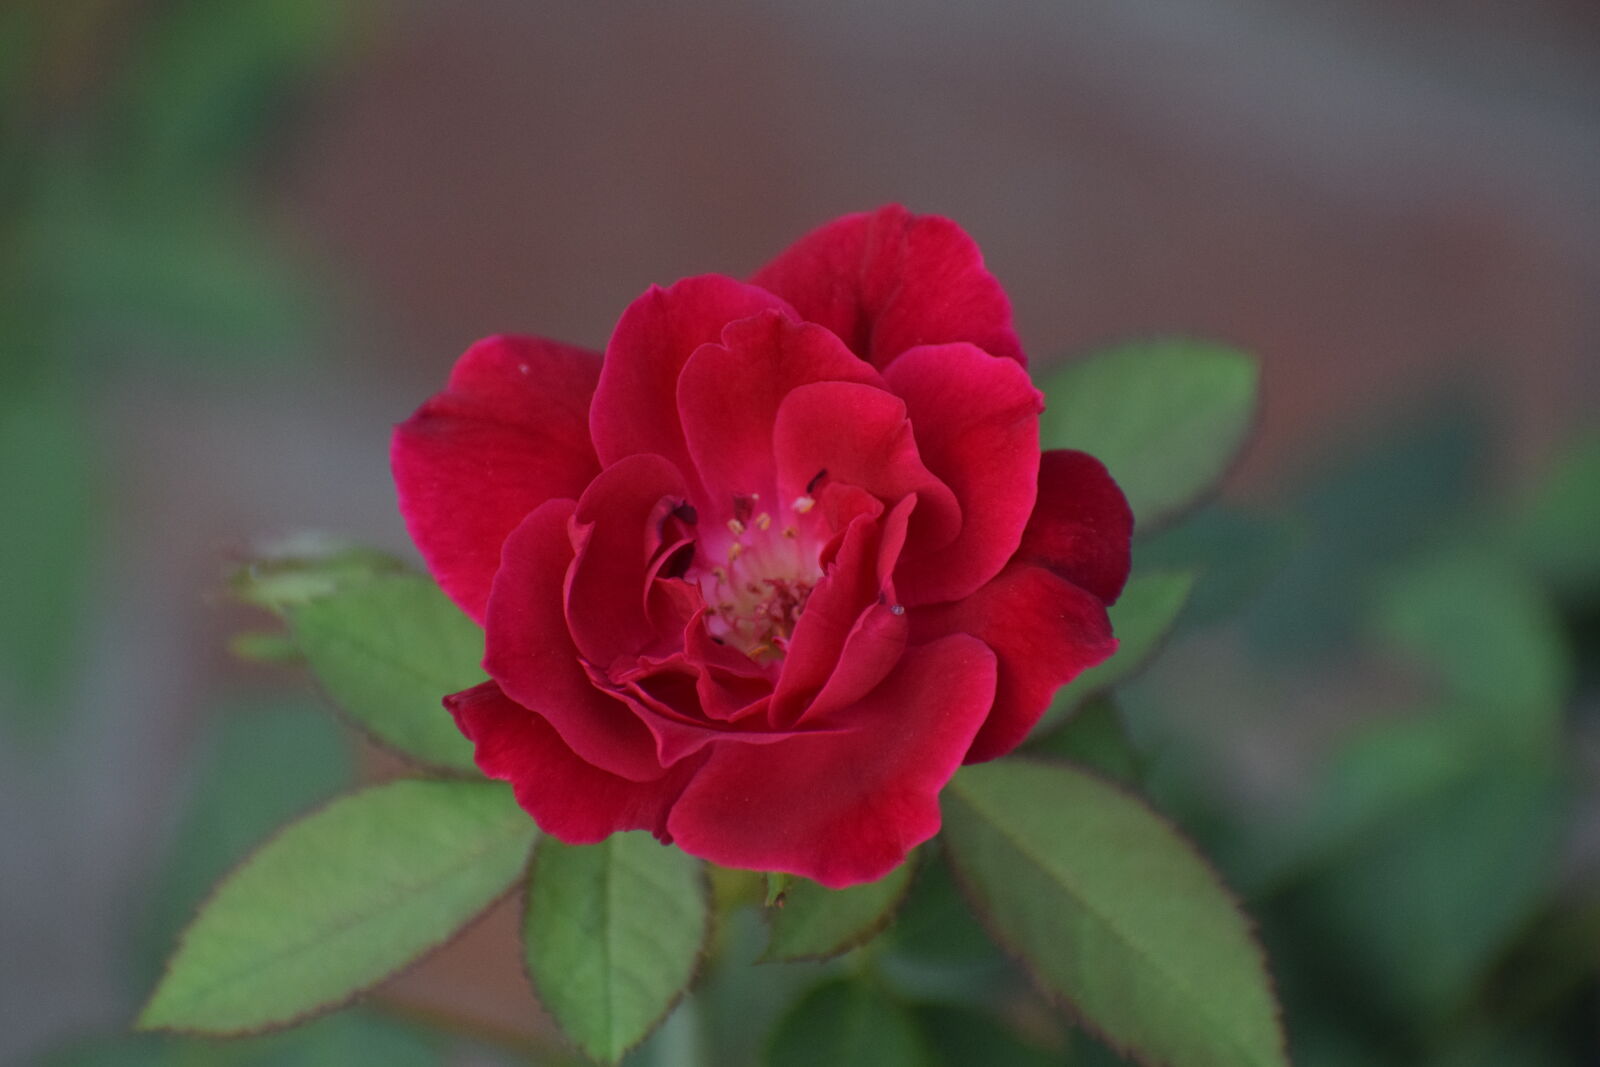 Nikon AF-P DX Nikkor 70-300mm F4.5-6.3G VR sample photo. Beautiful, flower, garden, plant photography